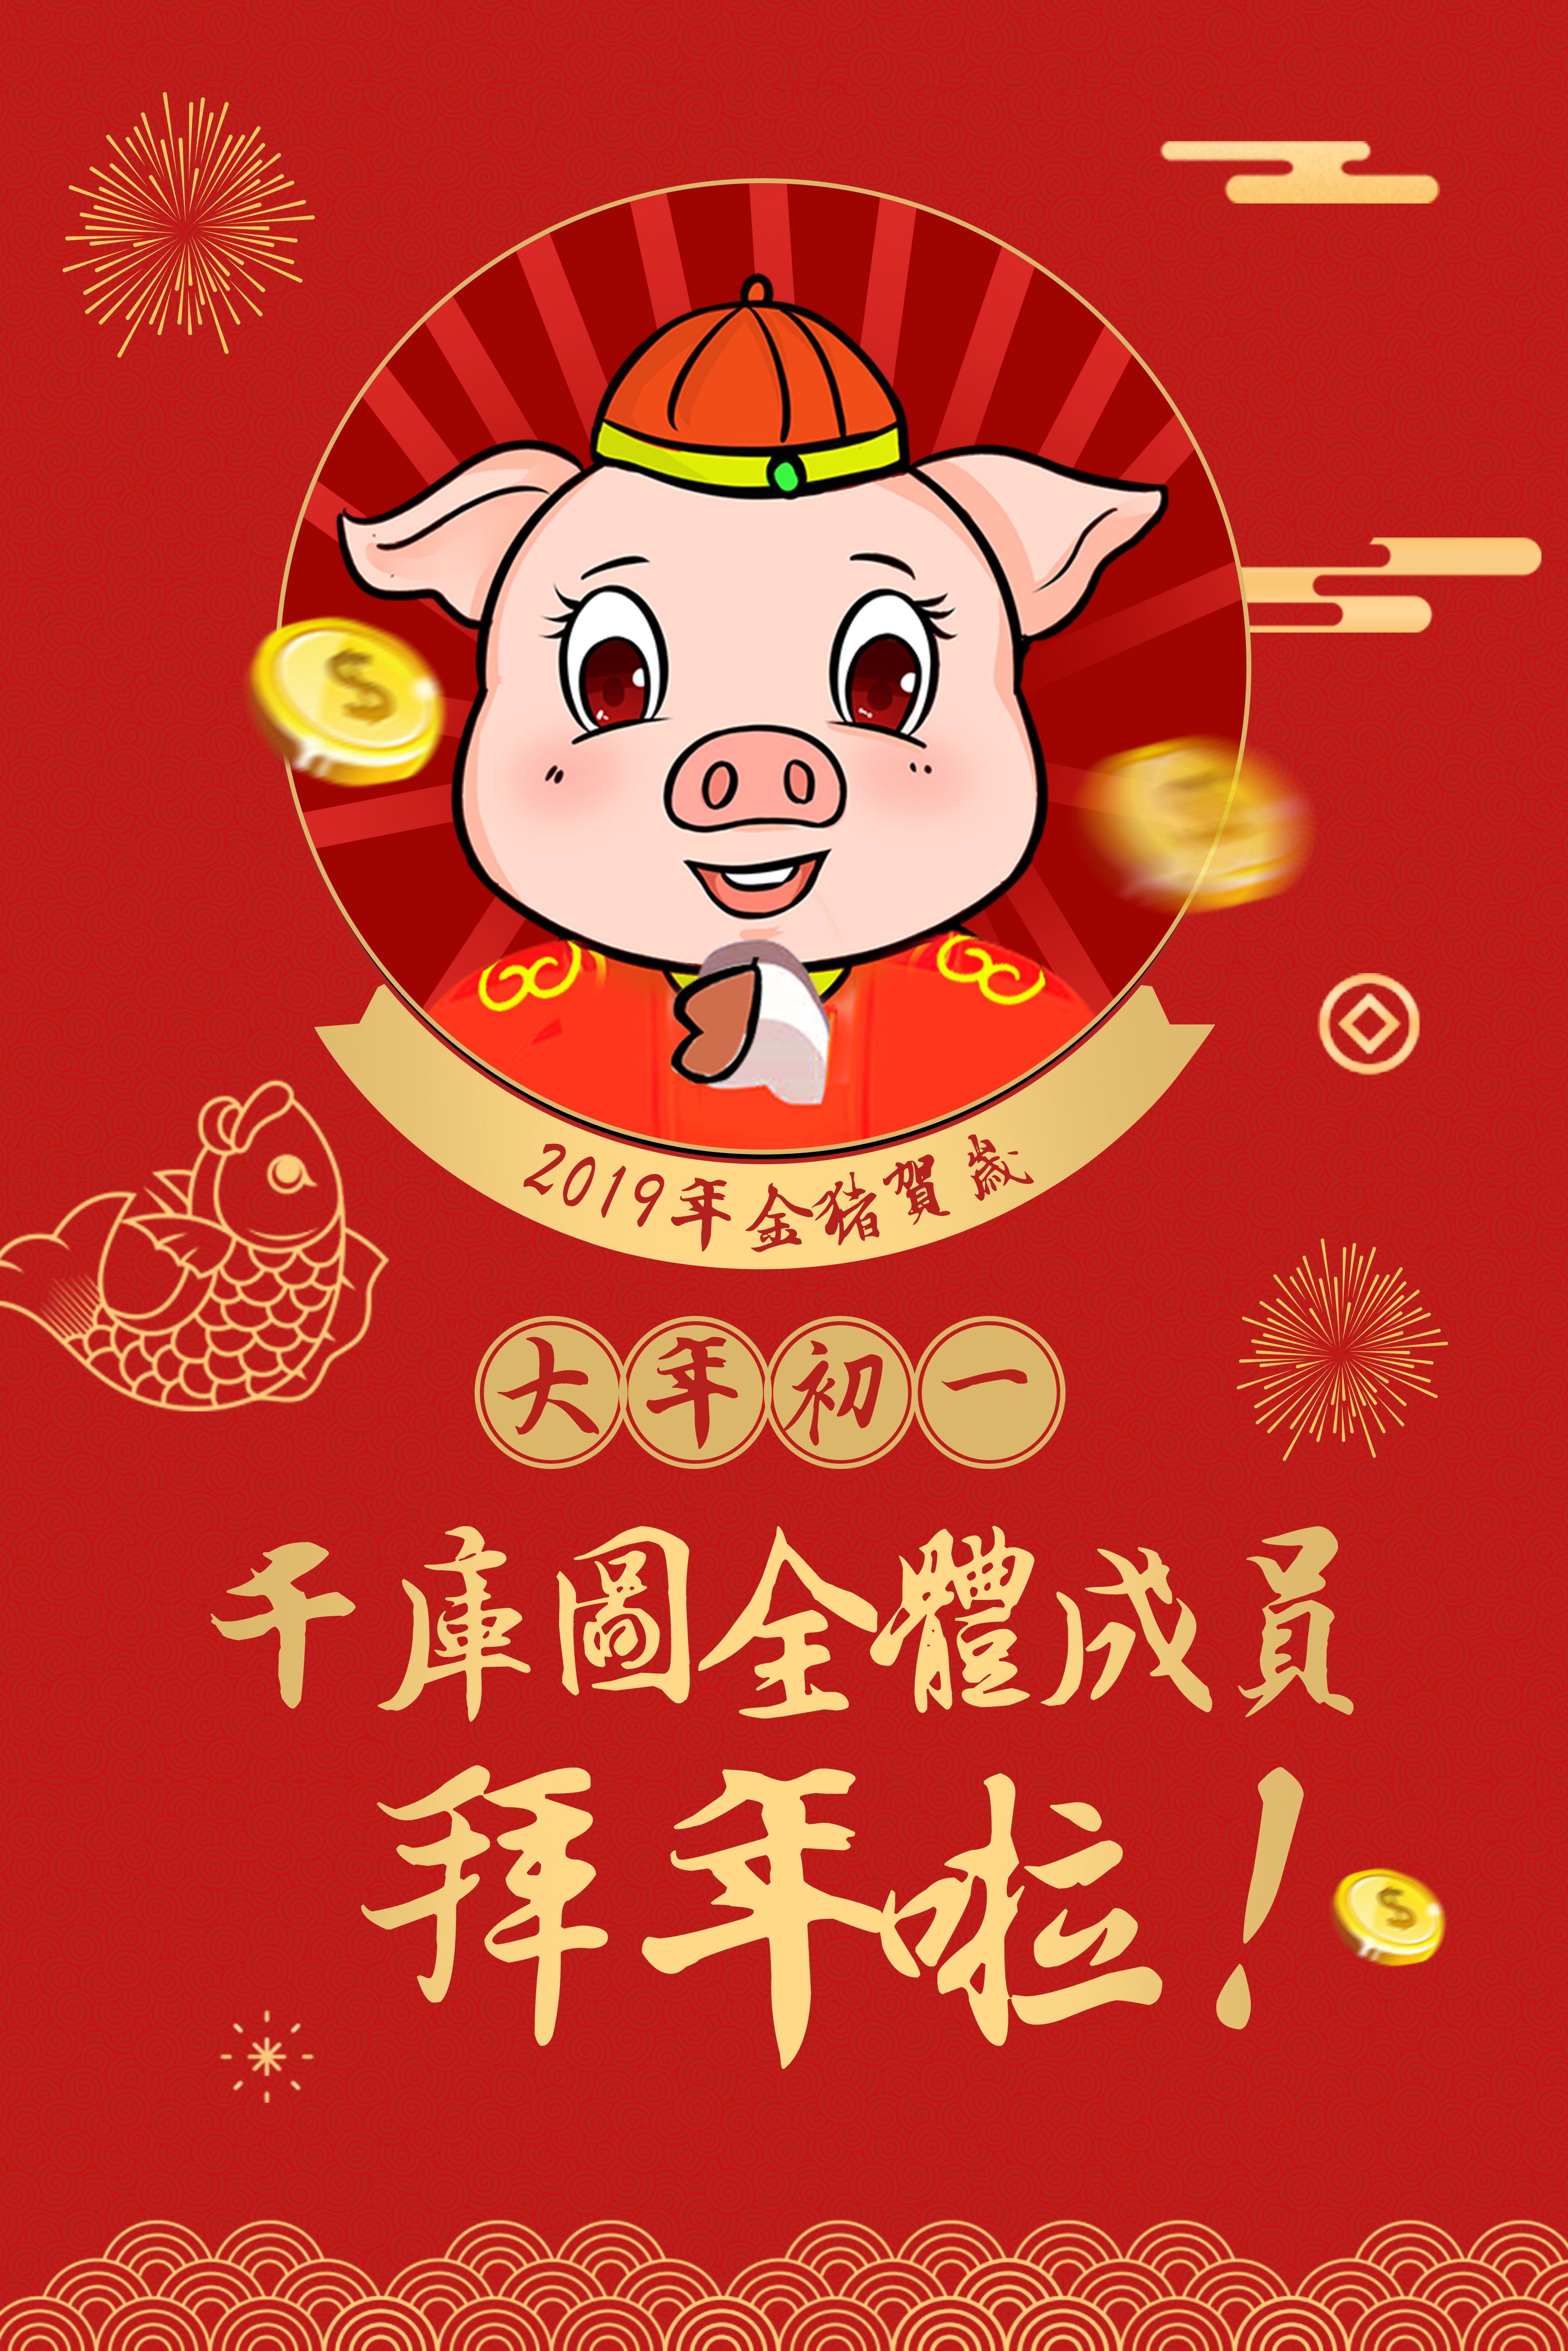 2019年金猪迎春猪年大吉海报图片